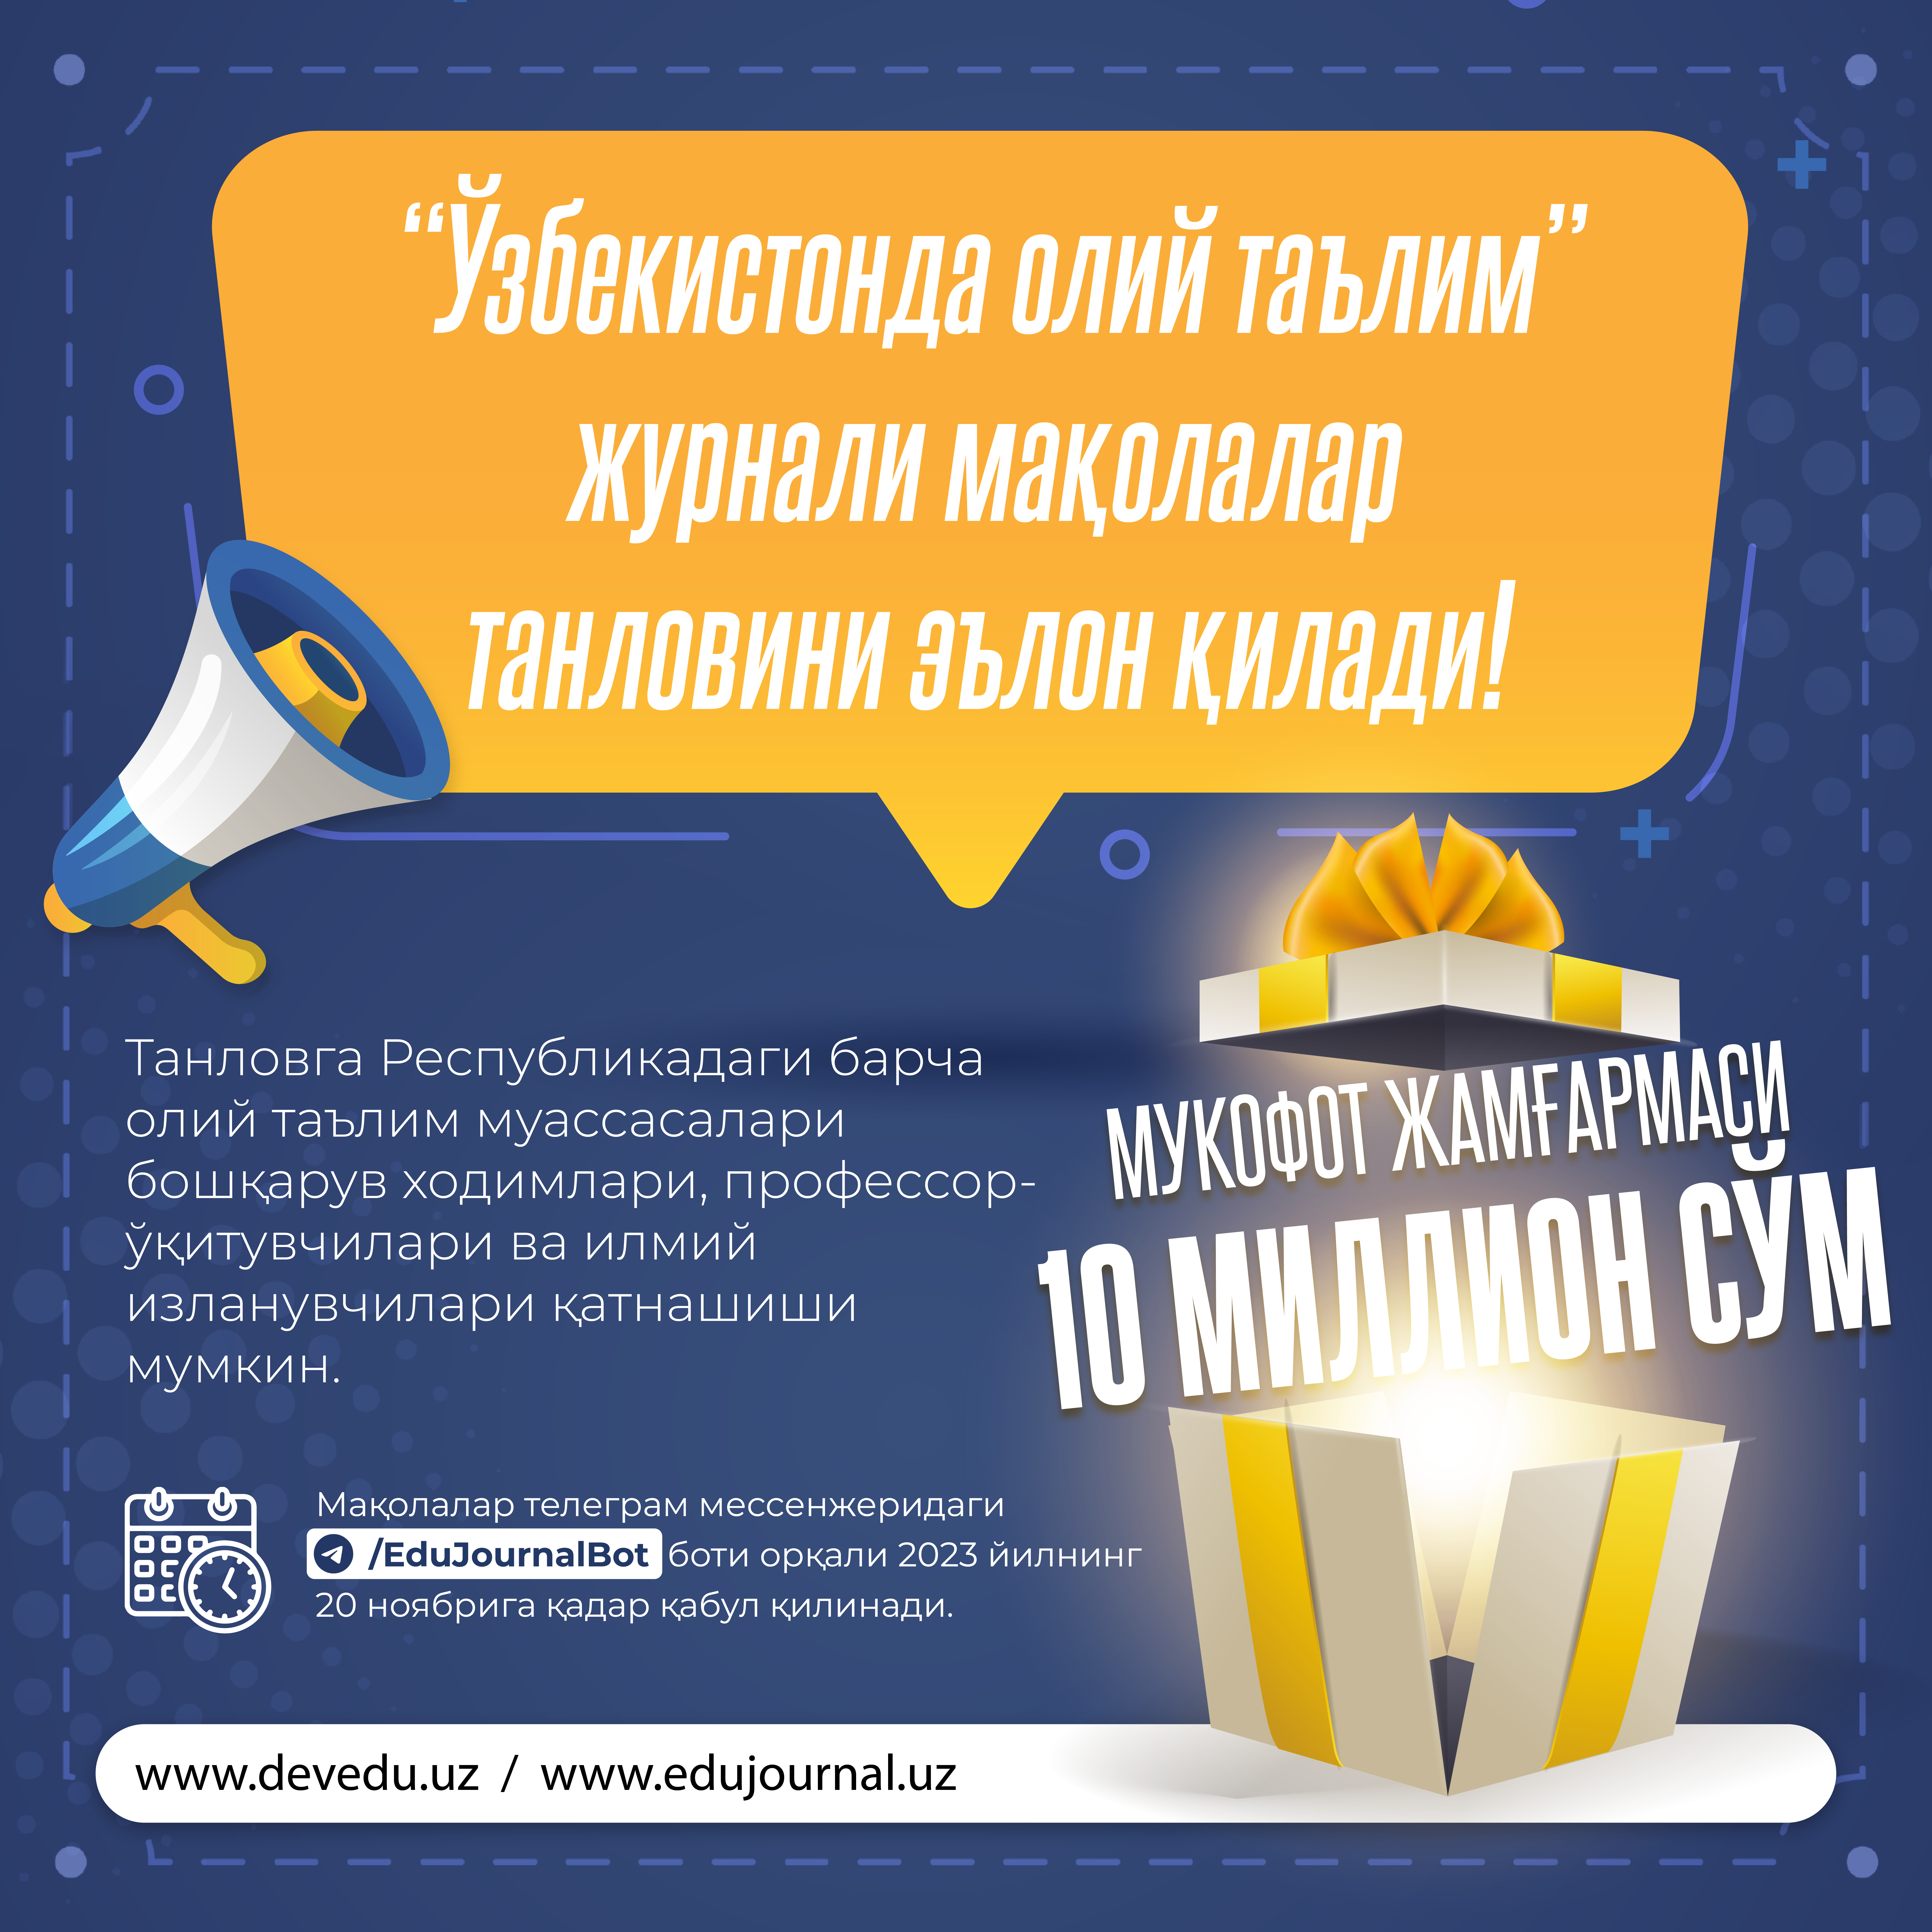 Журнал «Высшее образование в Узбекистане» объявляет конкурс статей!